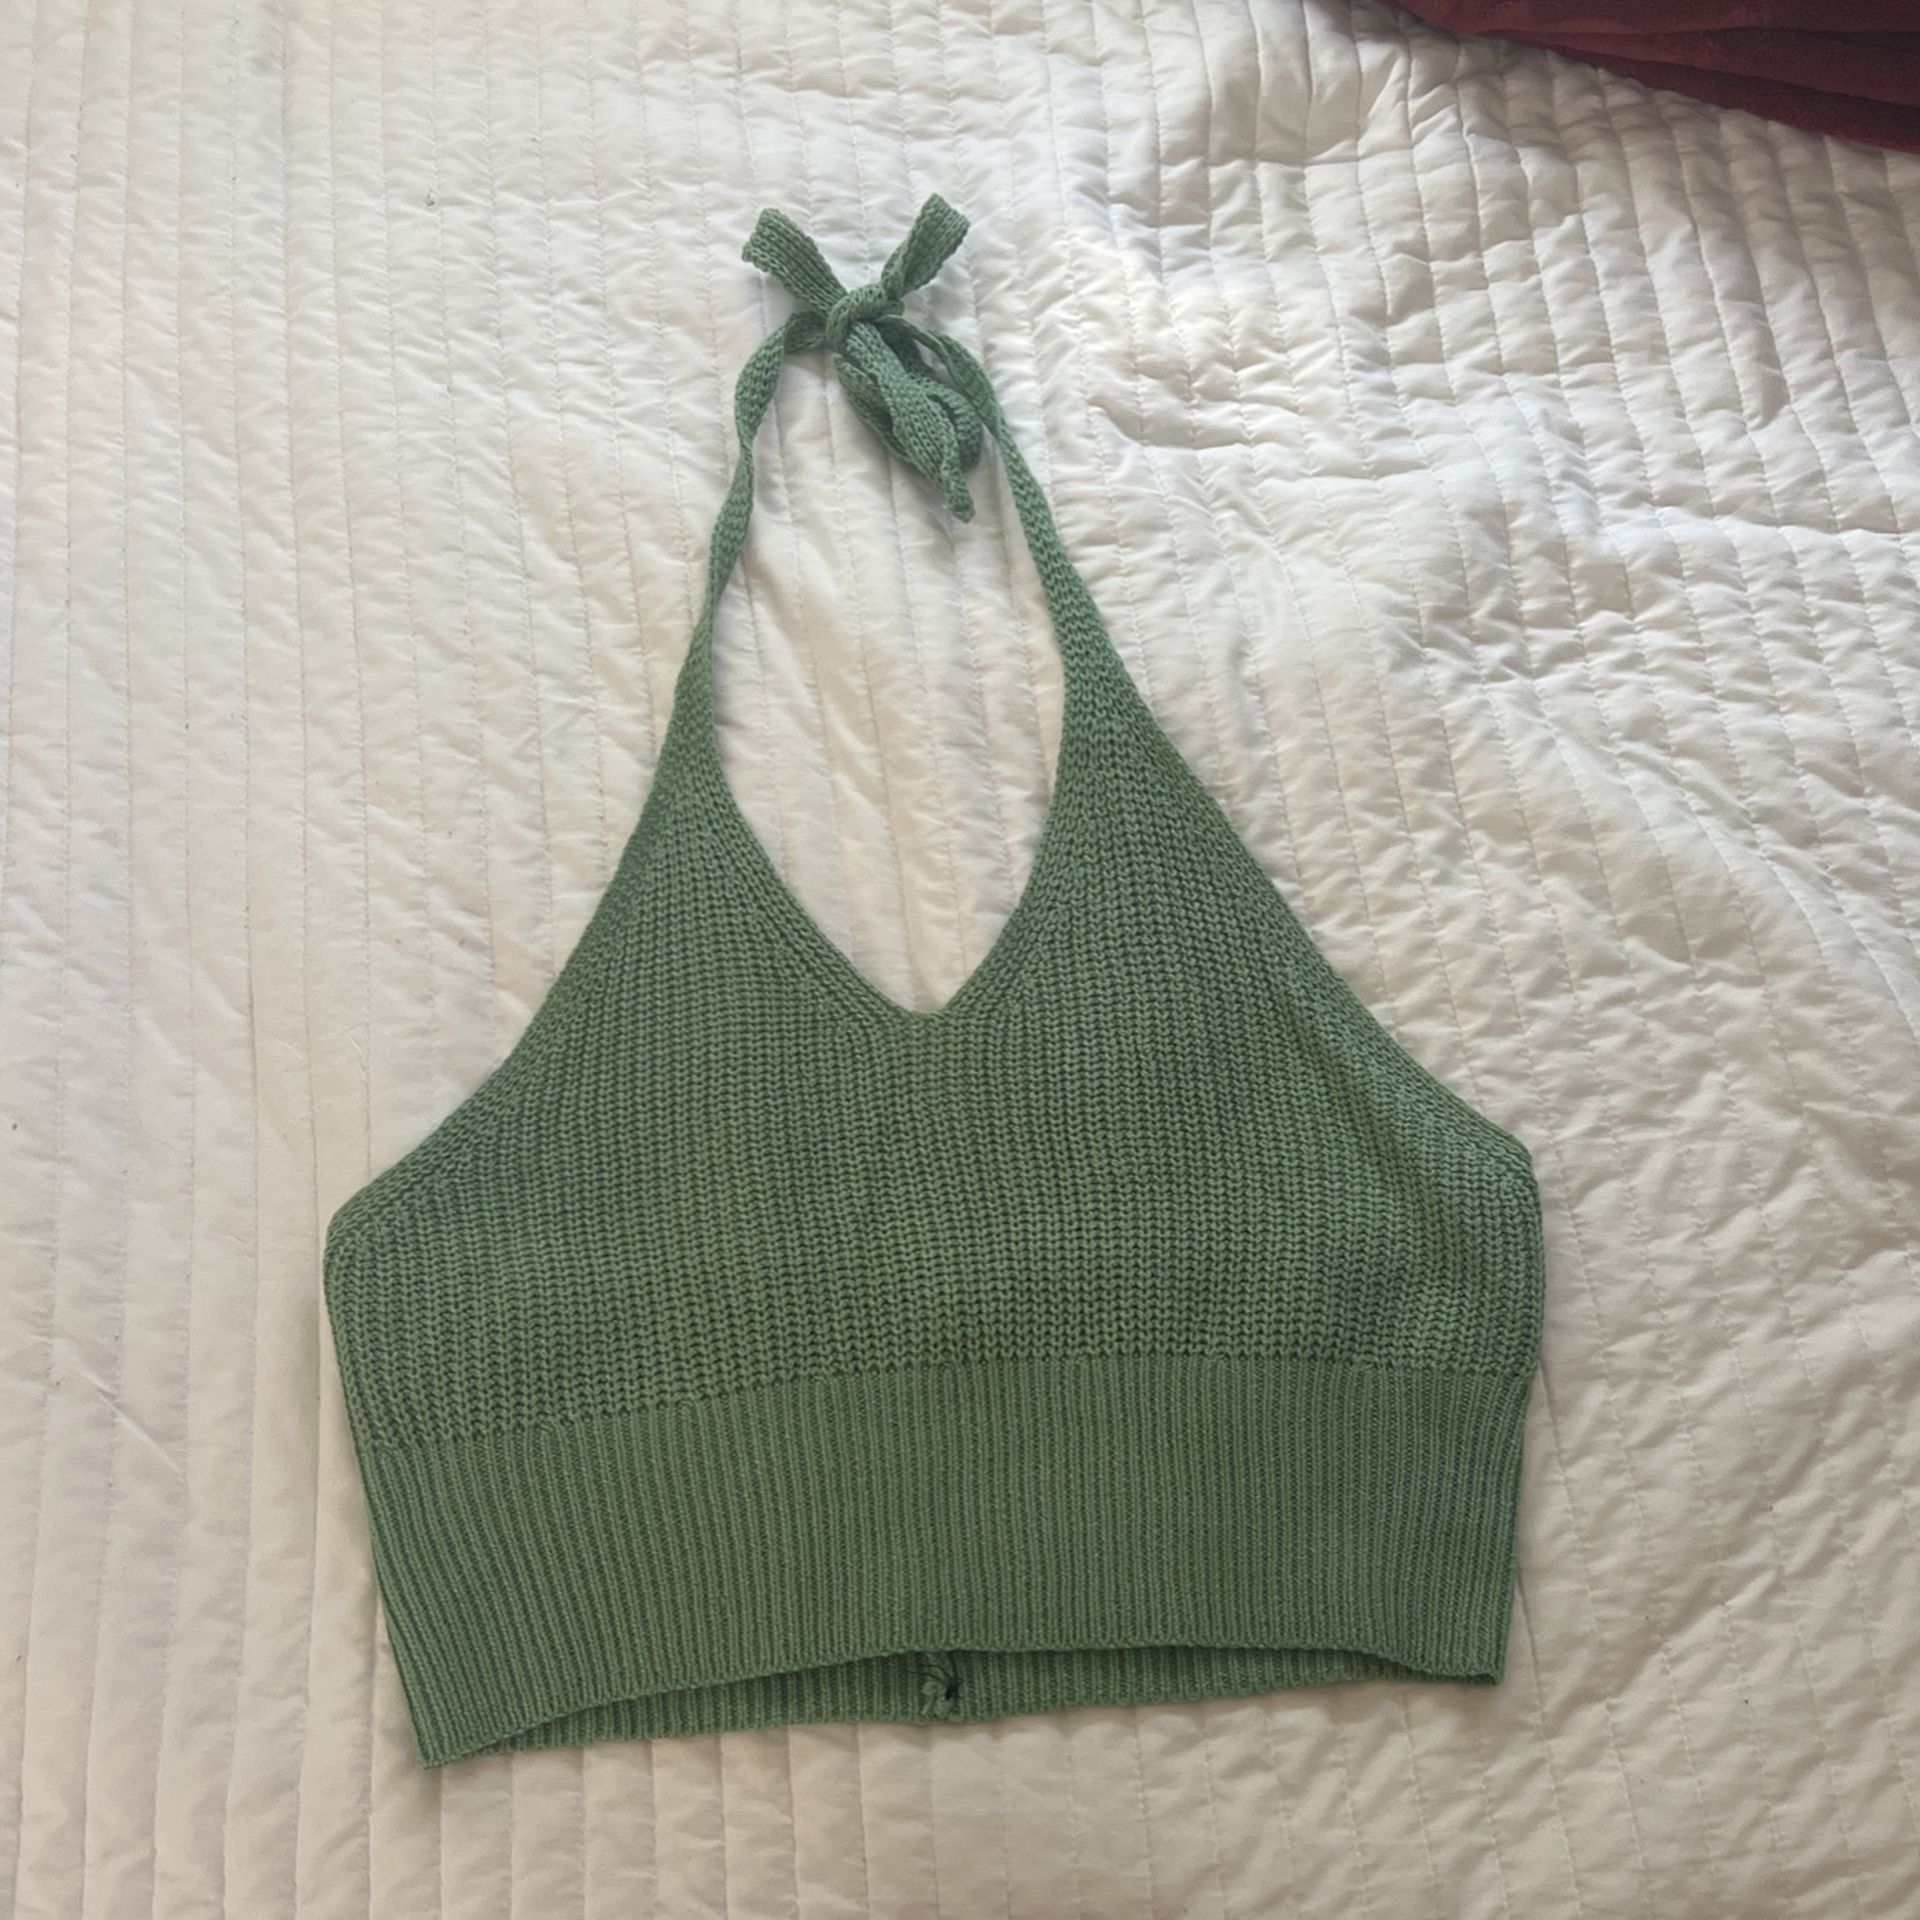 Mint Green Crochet Knitted Halter Crop Top